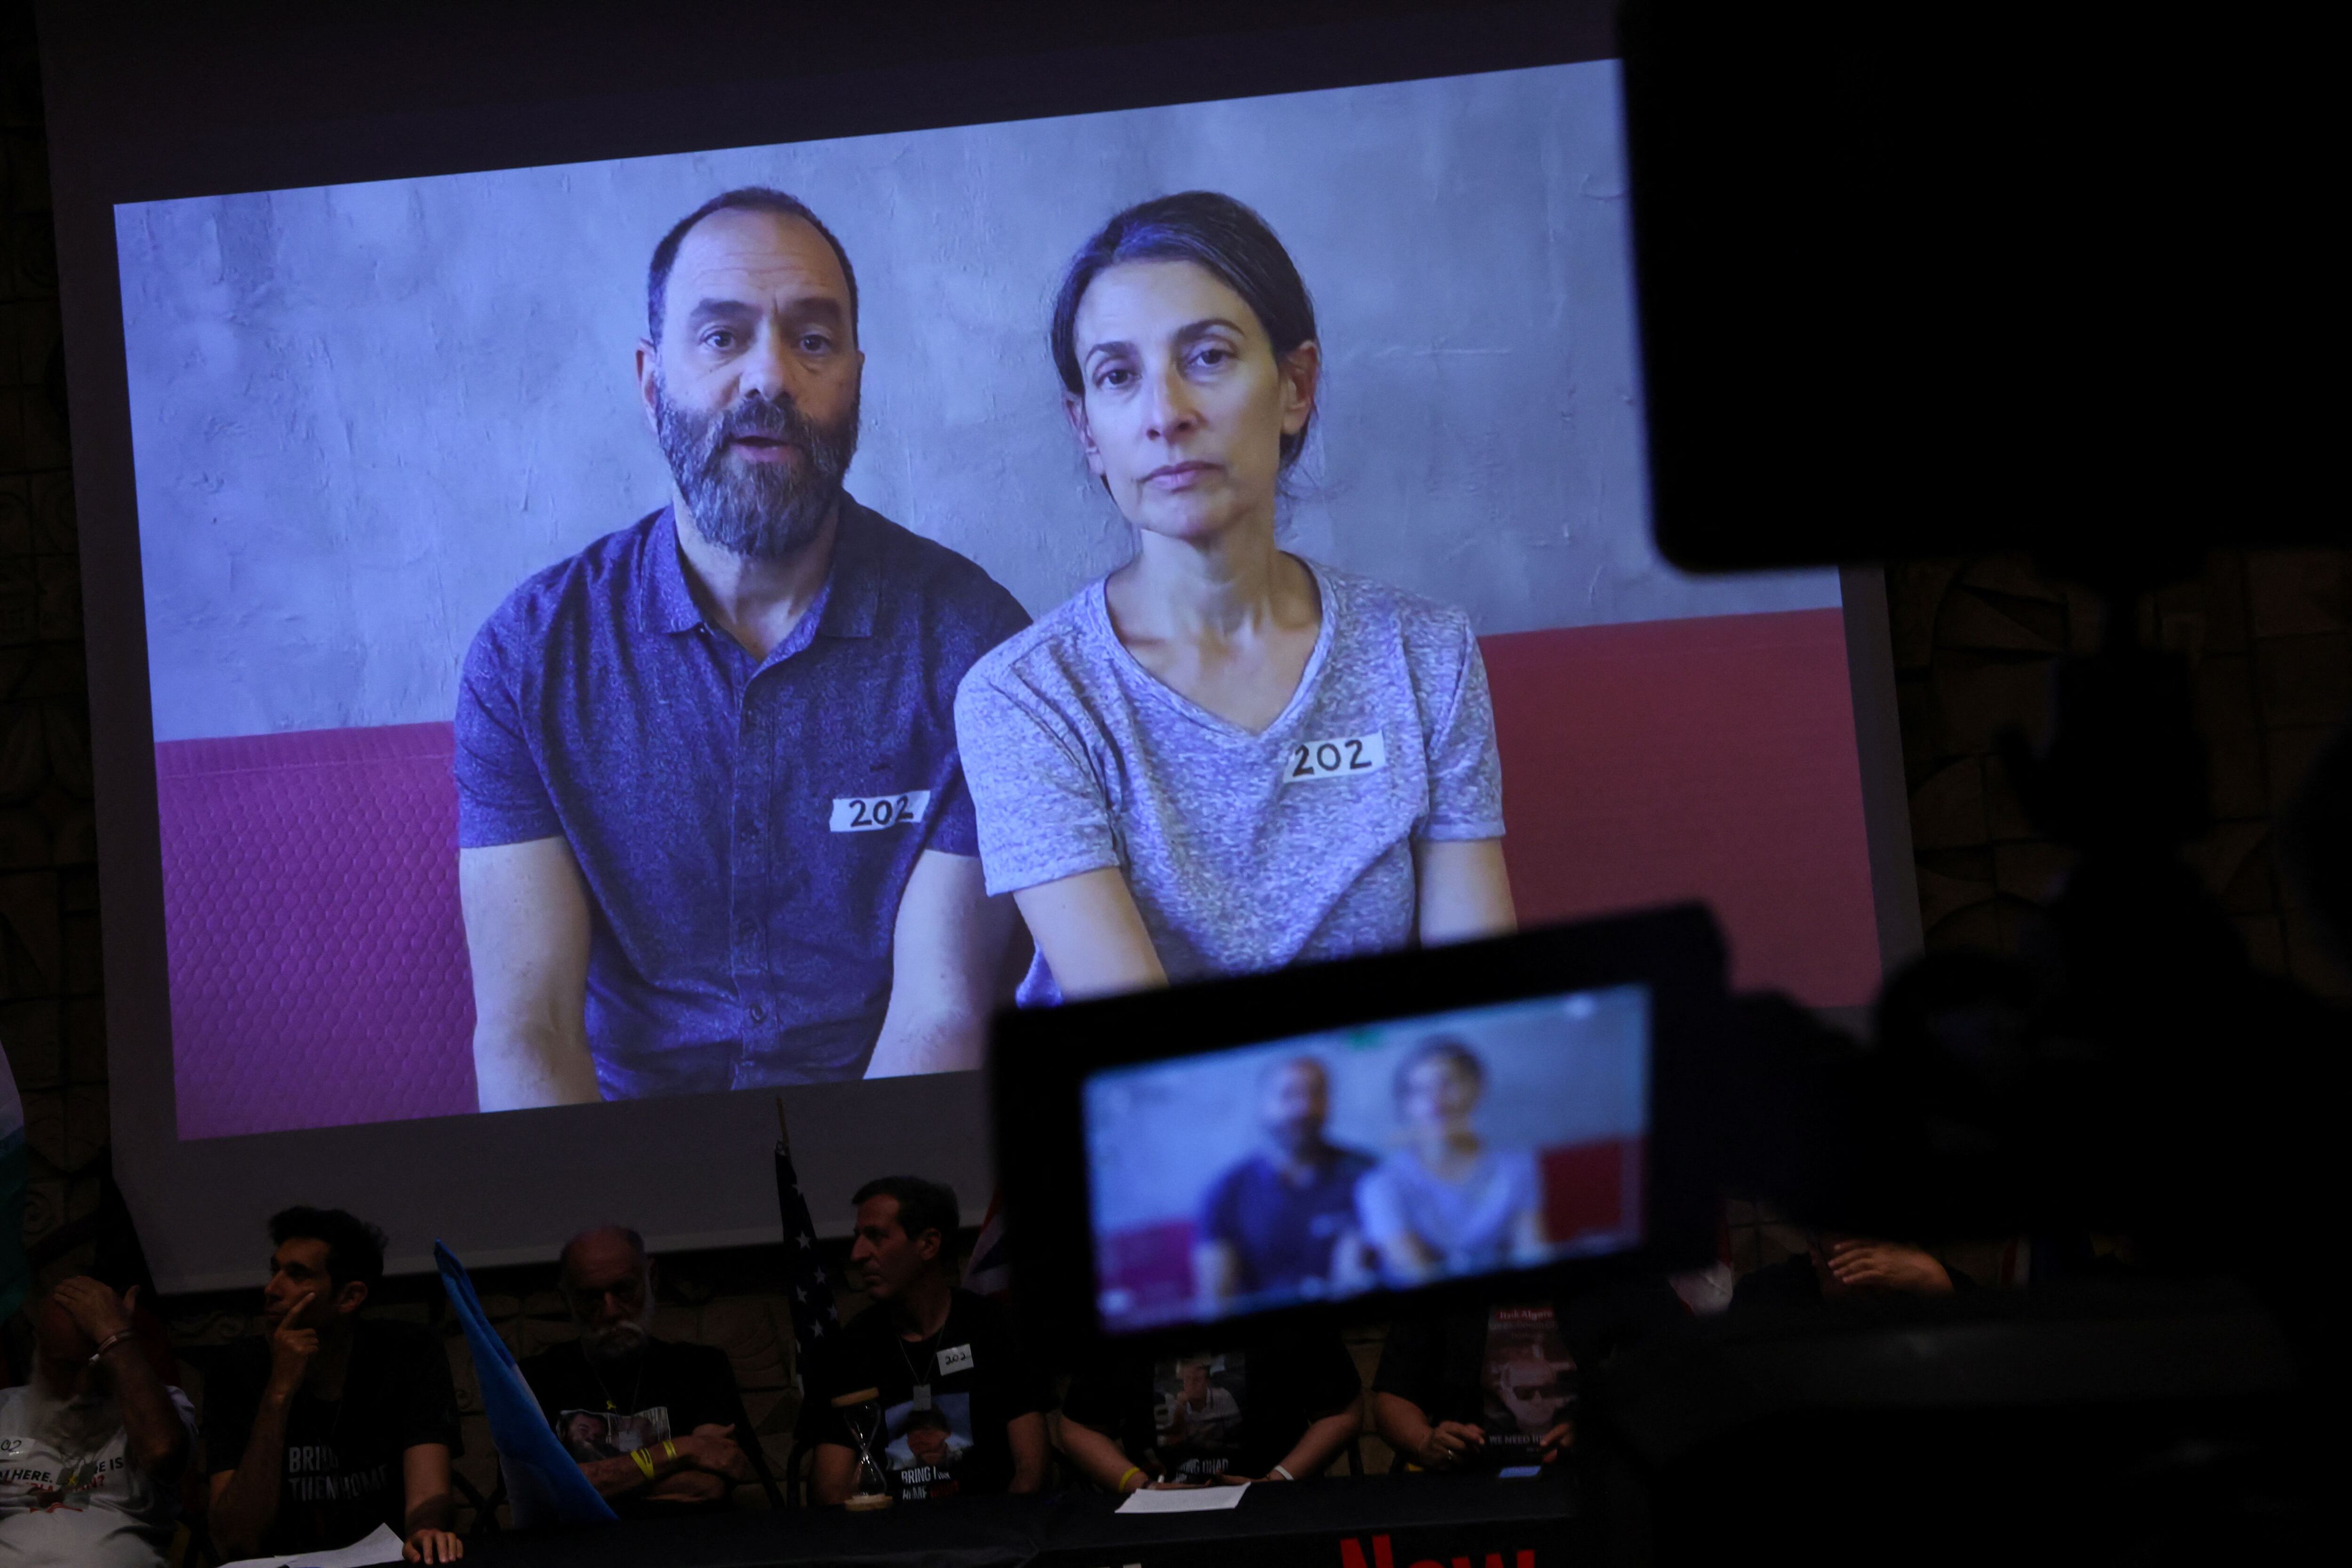 Jonathan Polin and Rachel Goldberg, padre y madre del rehén Hersh Goldberg-Polin, hablan con la prensa en Tel Aviv tras observar el video de su hijo difundido por Hamas. Şəkil: Reuters